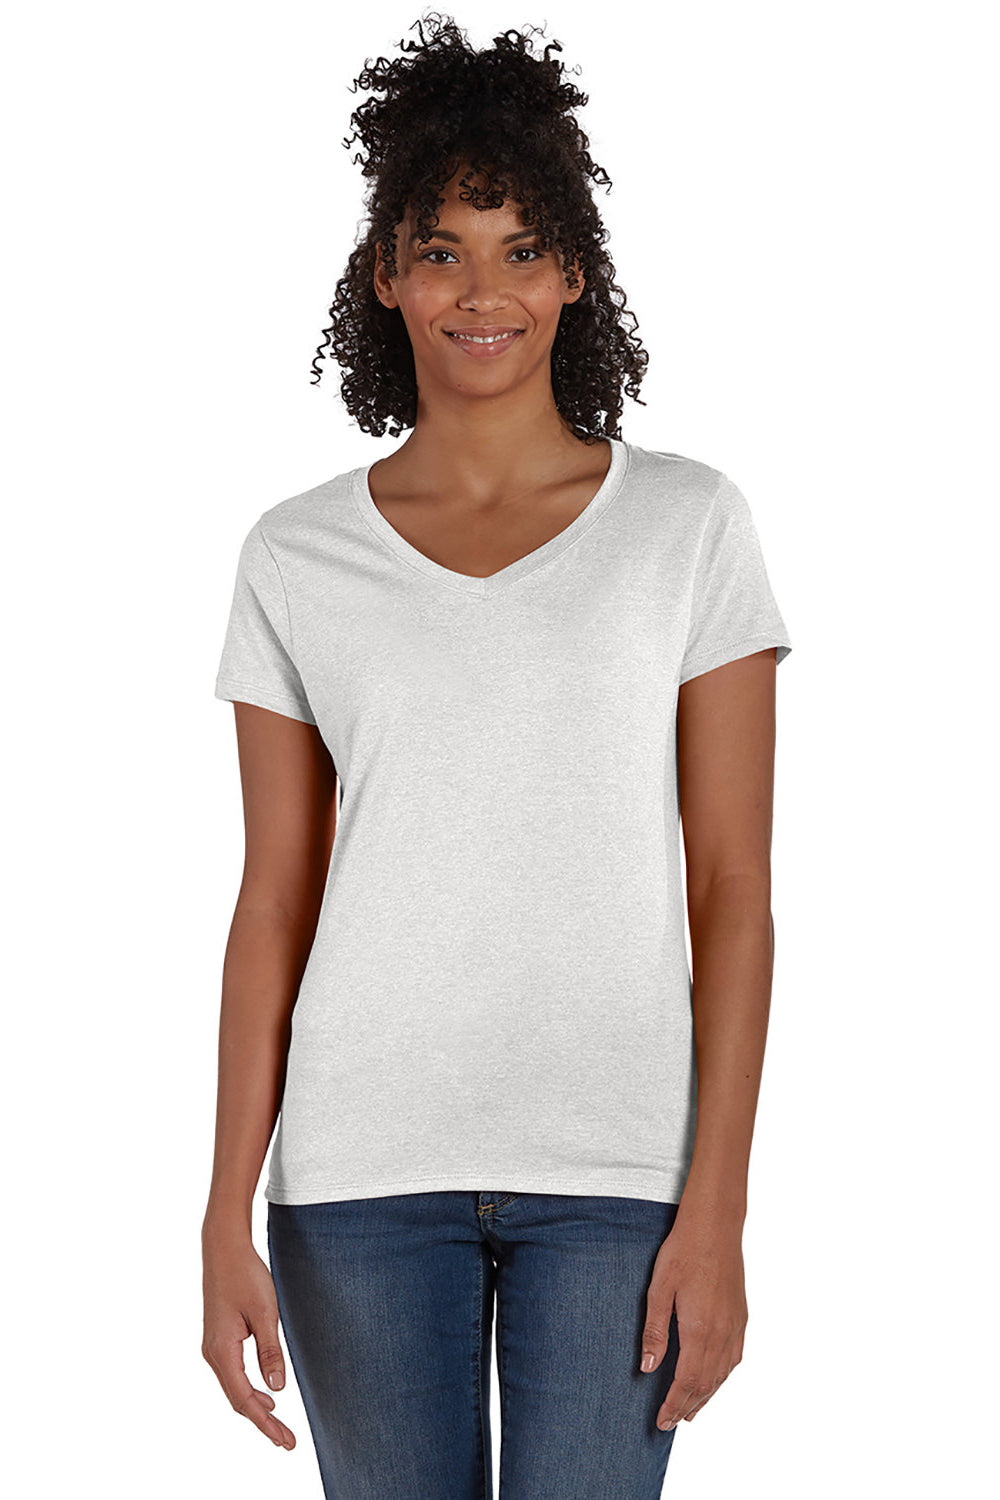 Hanes 42VT Womens X-Temp FreshIQ Moisture Wicking Short Sleeve V-Neck T-Shirt Eco White Front